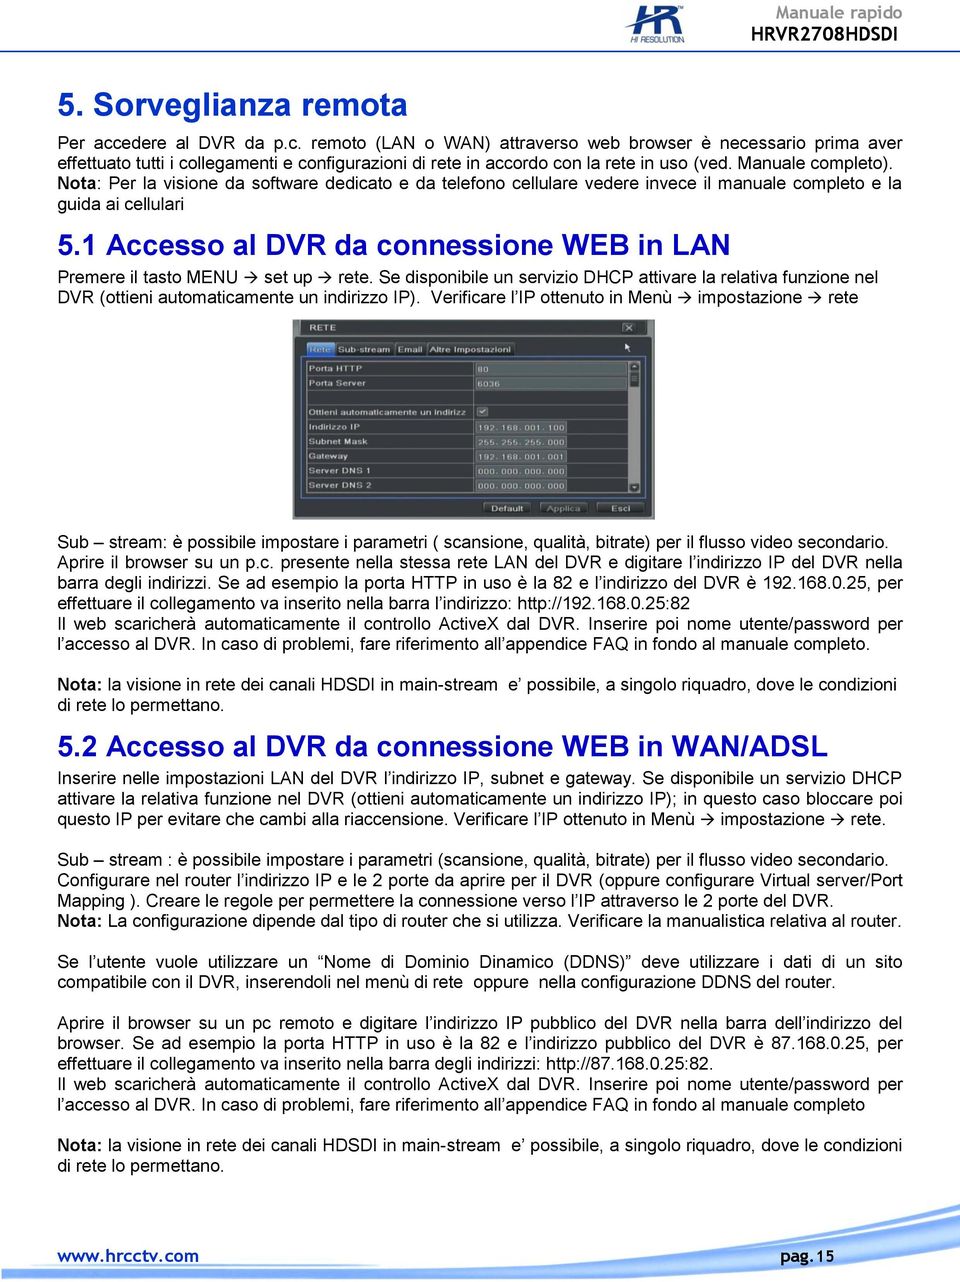 1 Accesso al DVR da connessione WEB in LAN Premere il tasto MENU set up rete. Se disponibile un servizio DHCP attivare la relativa funzione nel DVR (ottieni automaticamente un indirizzo IP).